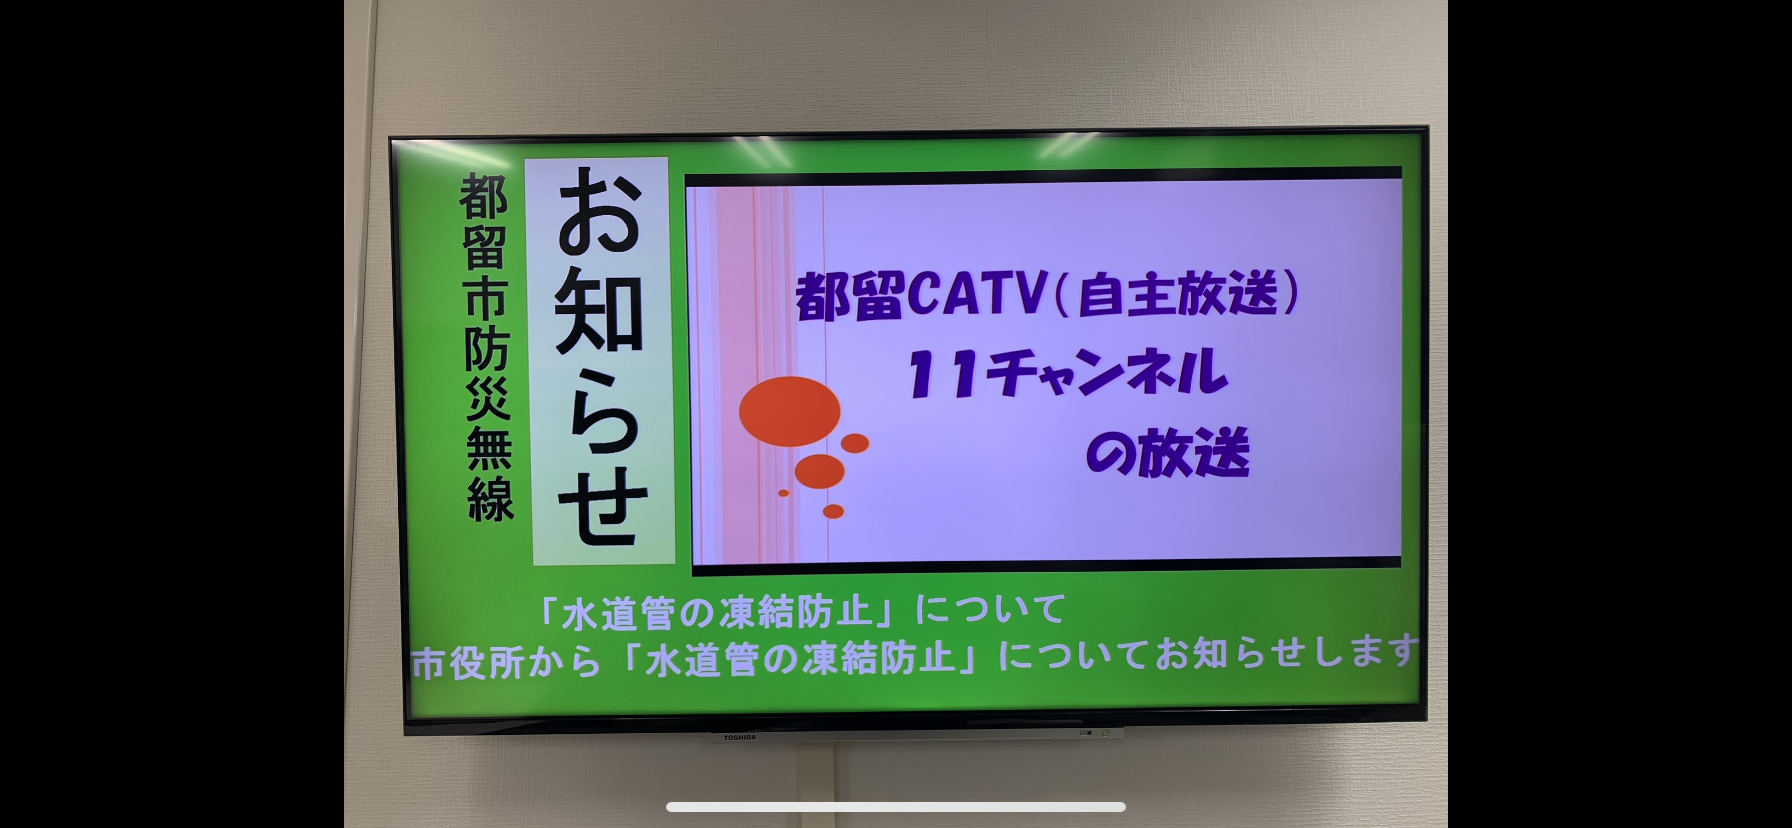 防災無線放送内容の「都留市CATV（11CH）画面上」へのL字放送